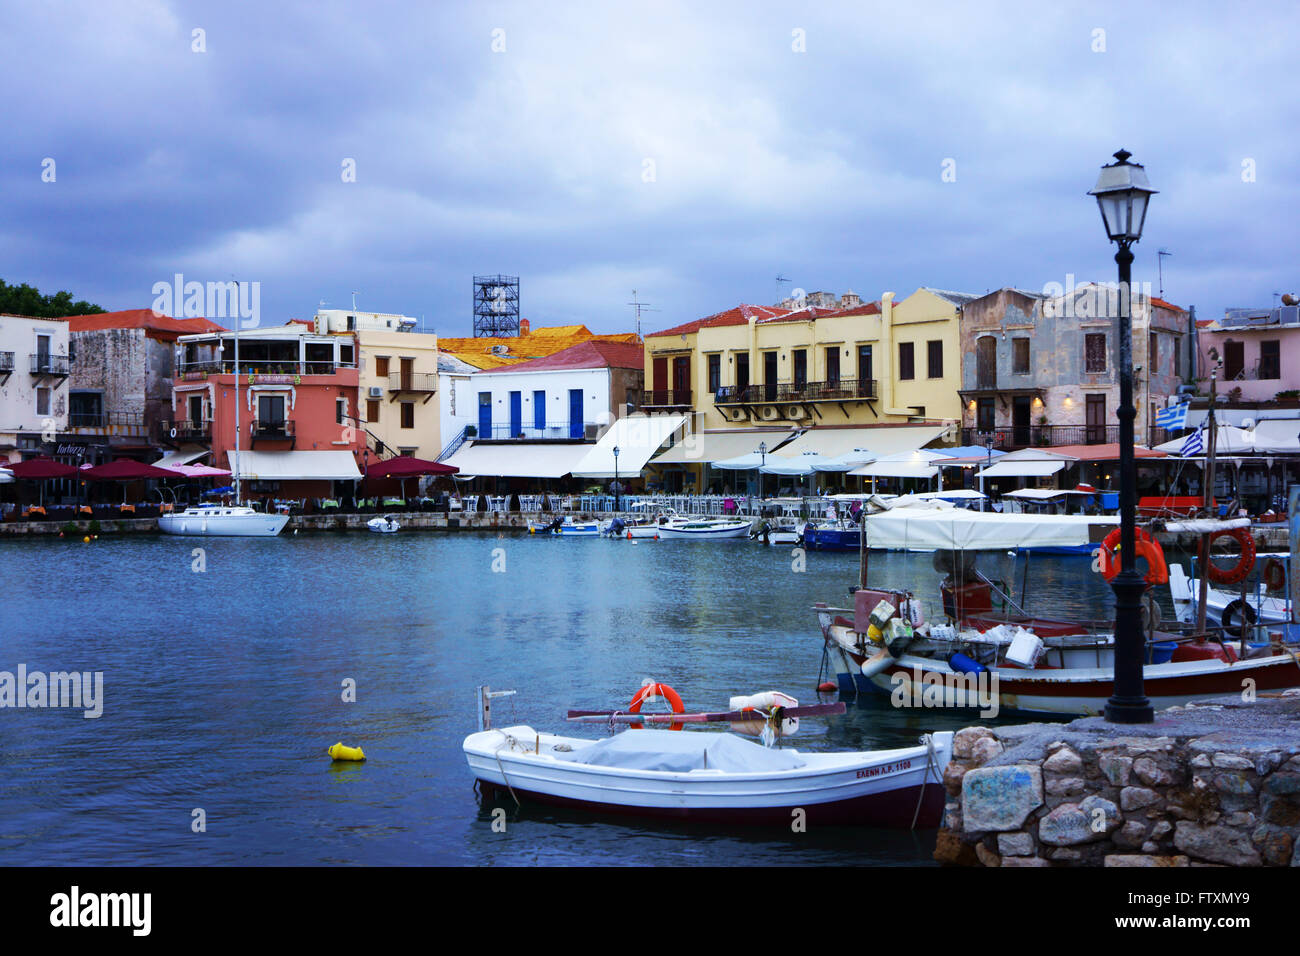 Hafen und Restaurants am Hafen in der Altstadt Rhetimno, Insel Kreta, Griechenland Stockfoto